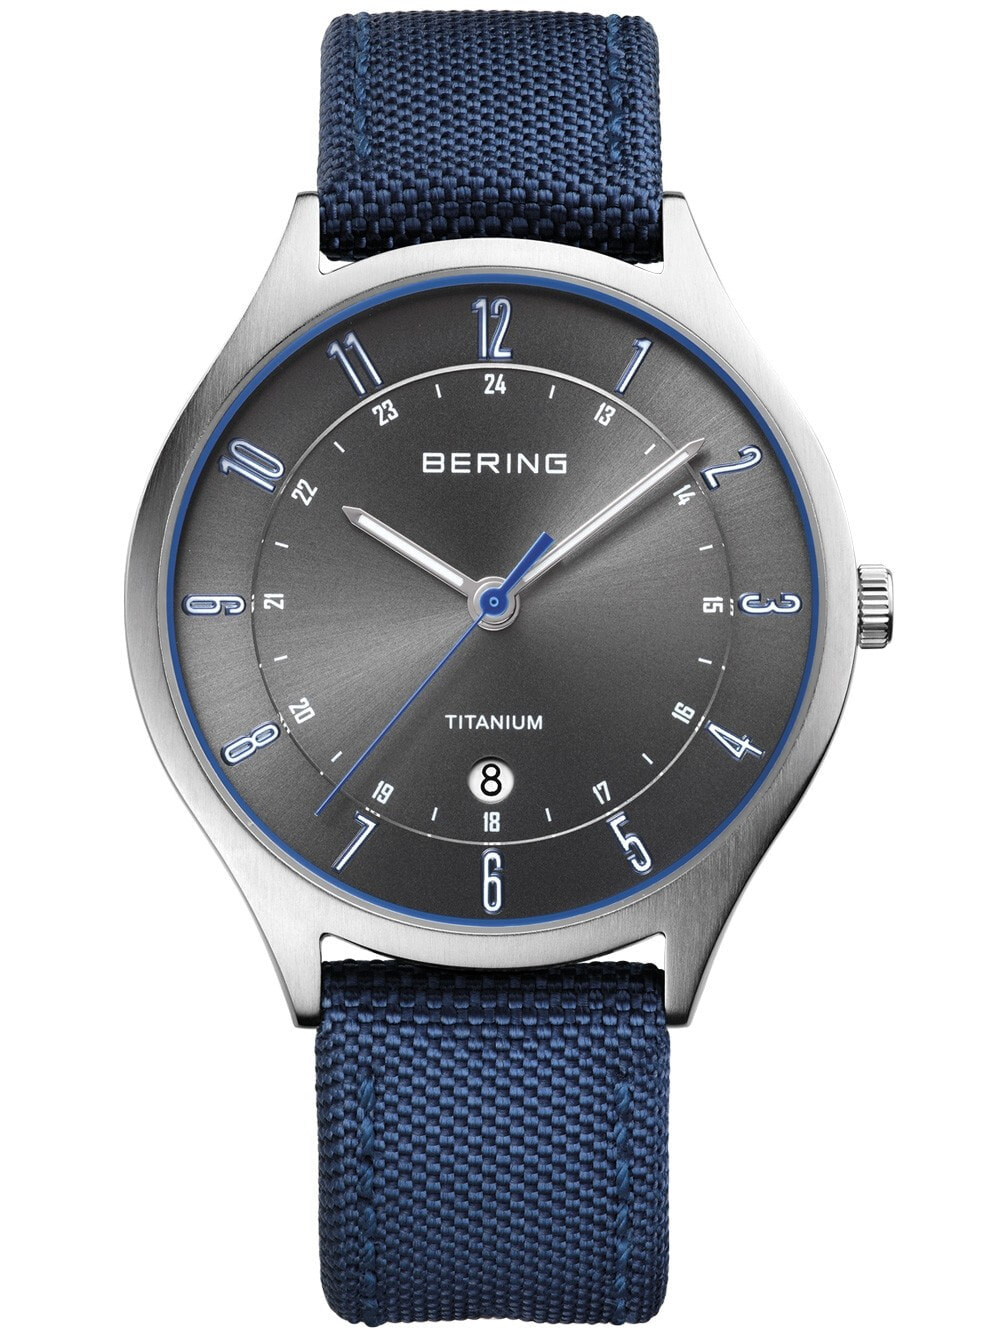 Мужские наручные часы с синим текстильным ремешком Bering 11739-873 Titanium Mens 39mm 5 ATM